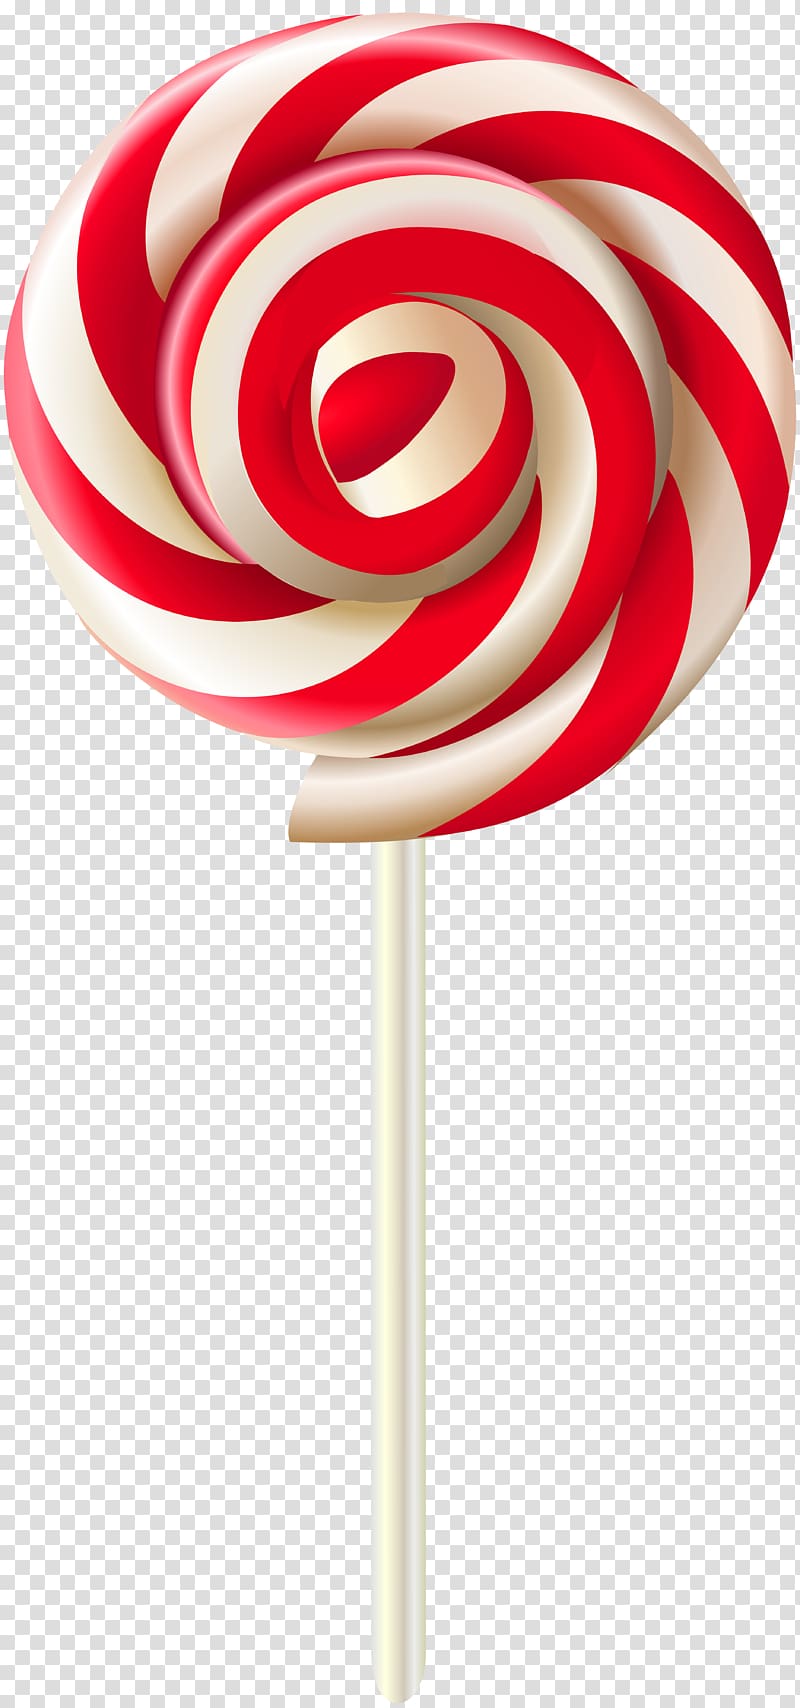 Lollipop Candy , lollipop transparent background PNG clipart